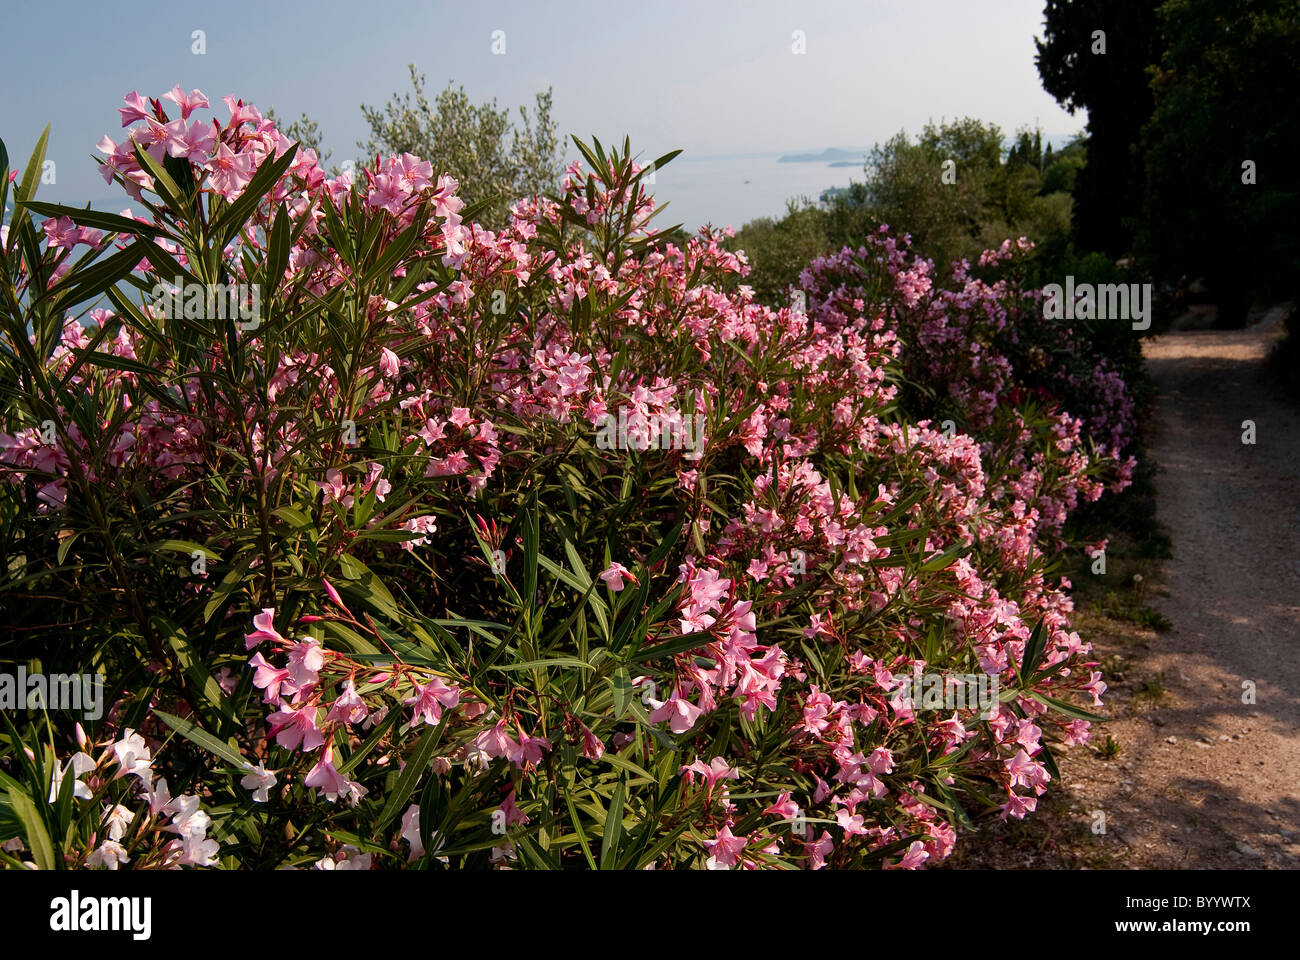 Oleander (Nerium oleander), flowering hedge. Stock Photo